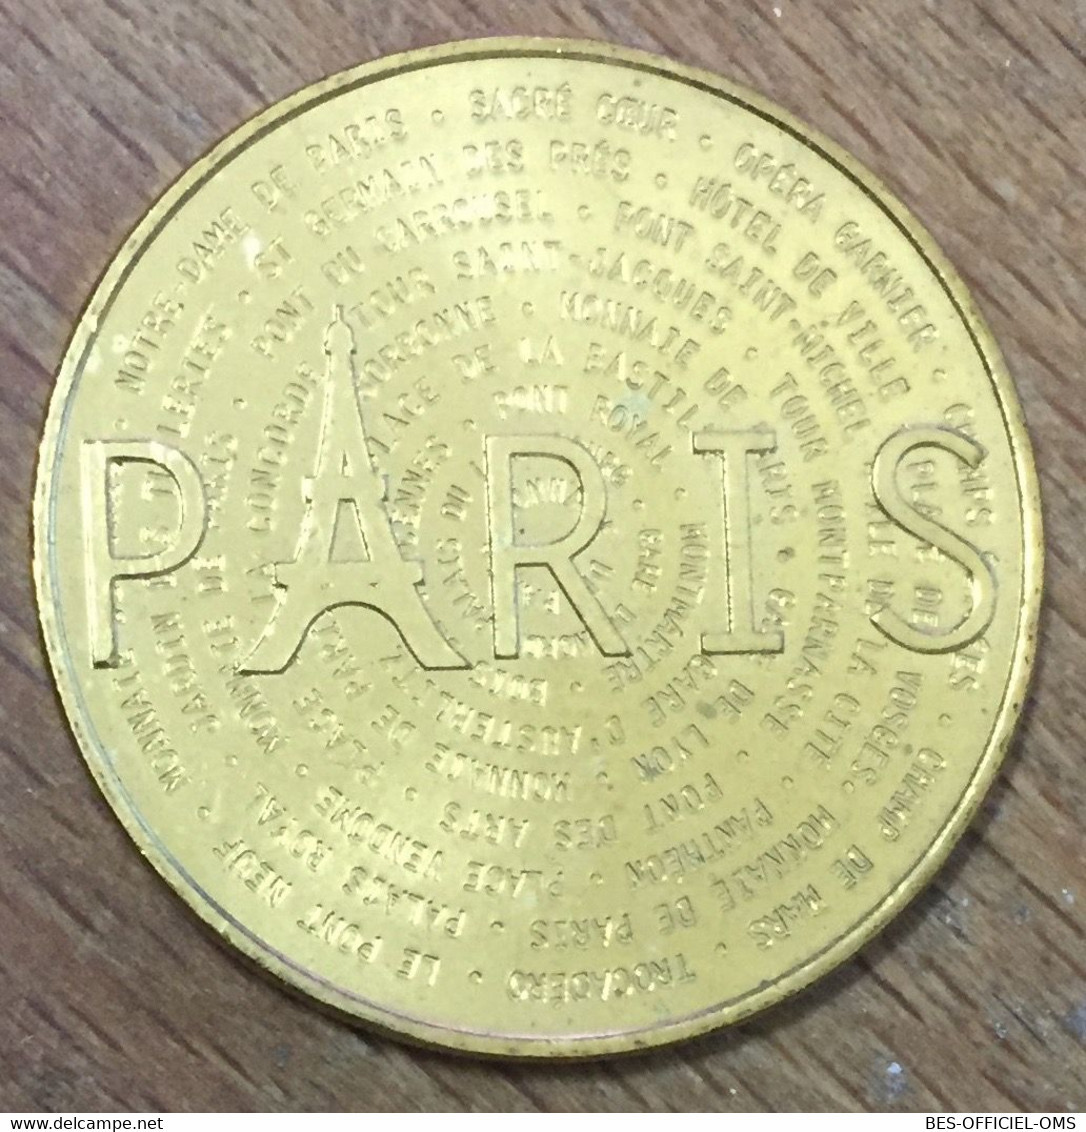 75001 PARIS MDP 2016 MÉDAILLE SOUVENIR MONNAIE DE PARIS JETON TOURISTIQUE TOKENS MEDALS COINS - 2016